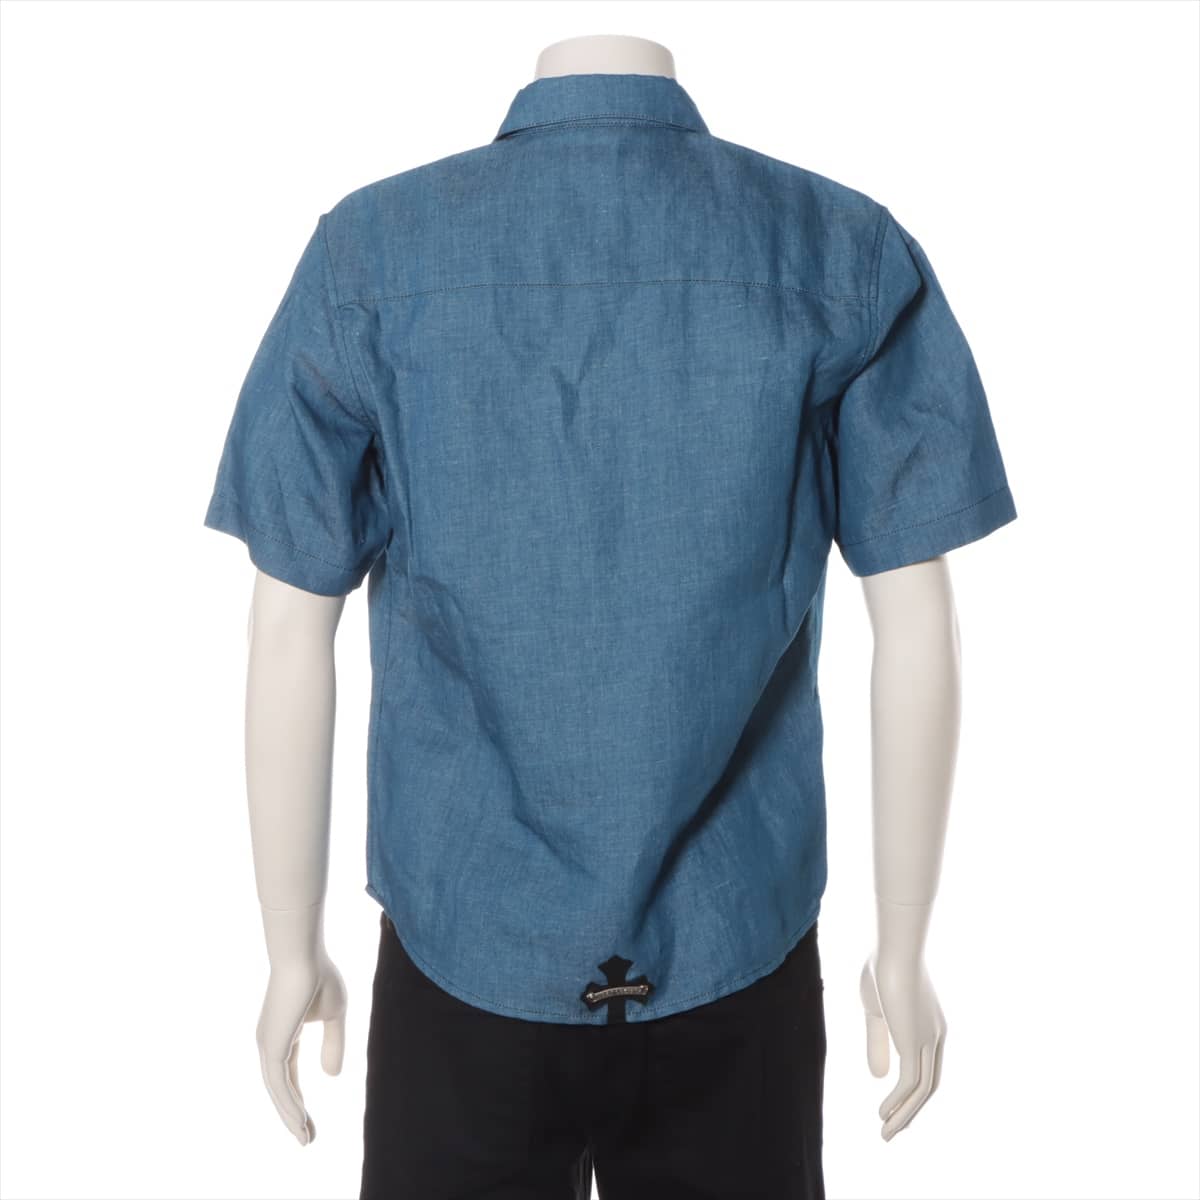 Chrome Hearts Cross button Denim shirt Cotton & linen S JVP Short sleeves